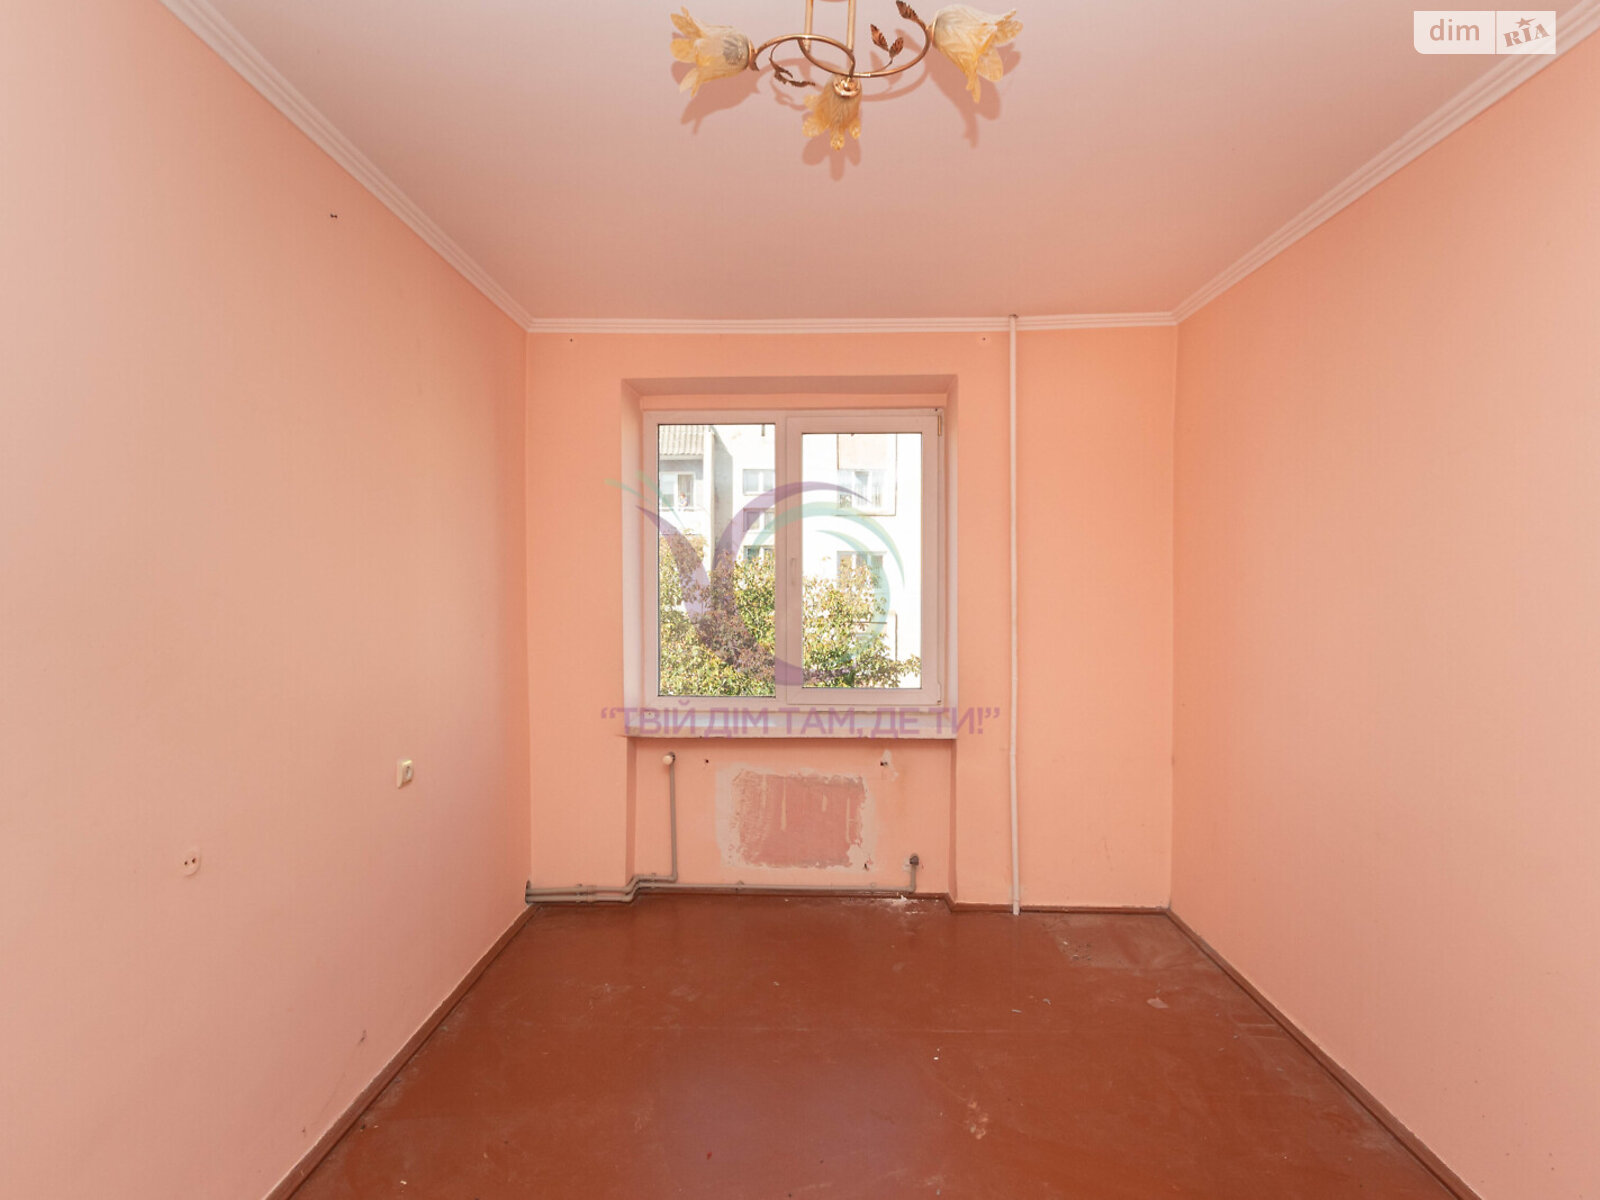 Продажа трехкомнатной квартиры в Новоселице, на ул. Героев Майдана, район Новоселица фото 1